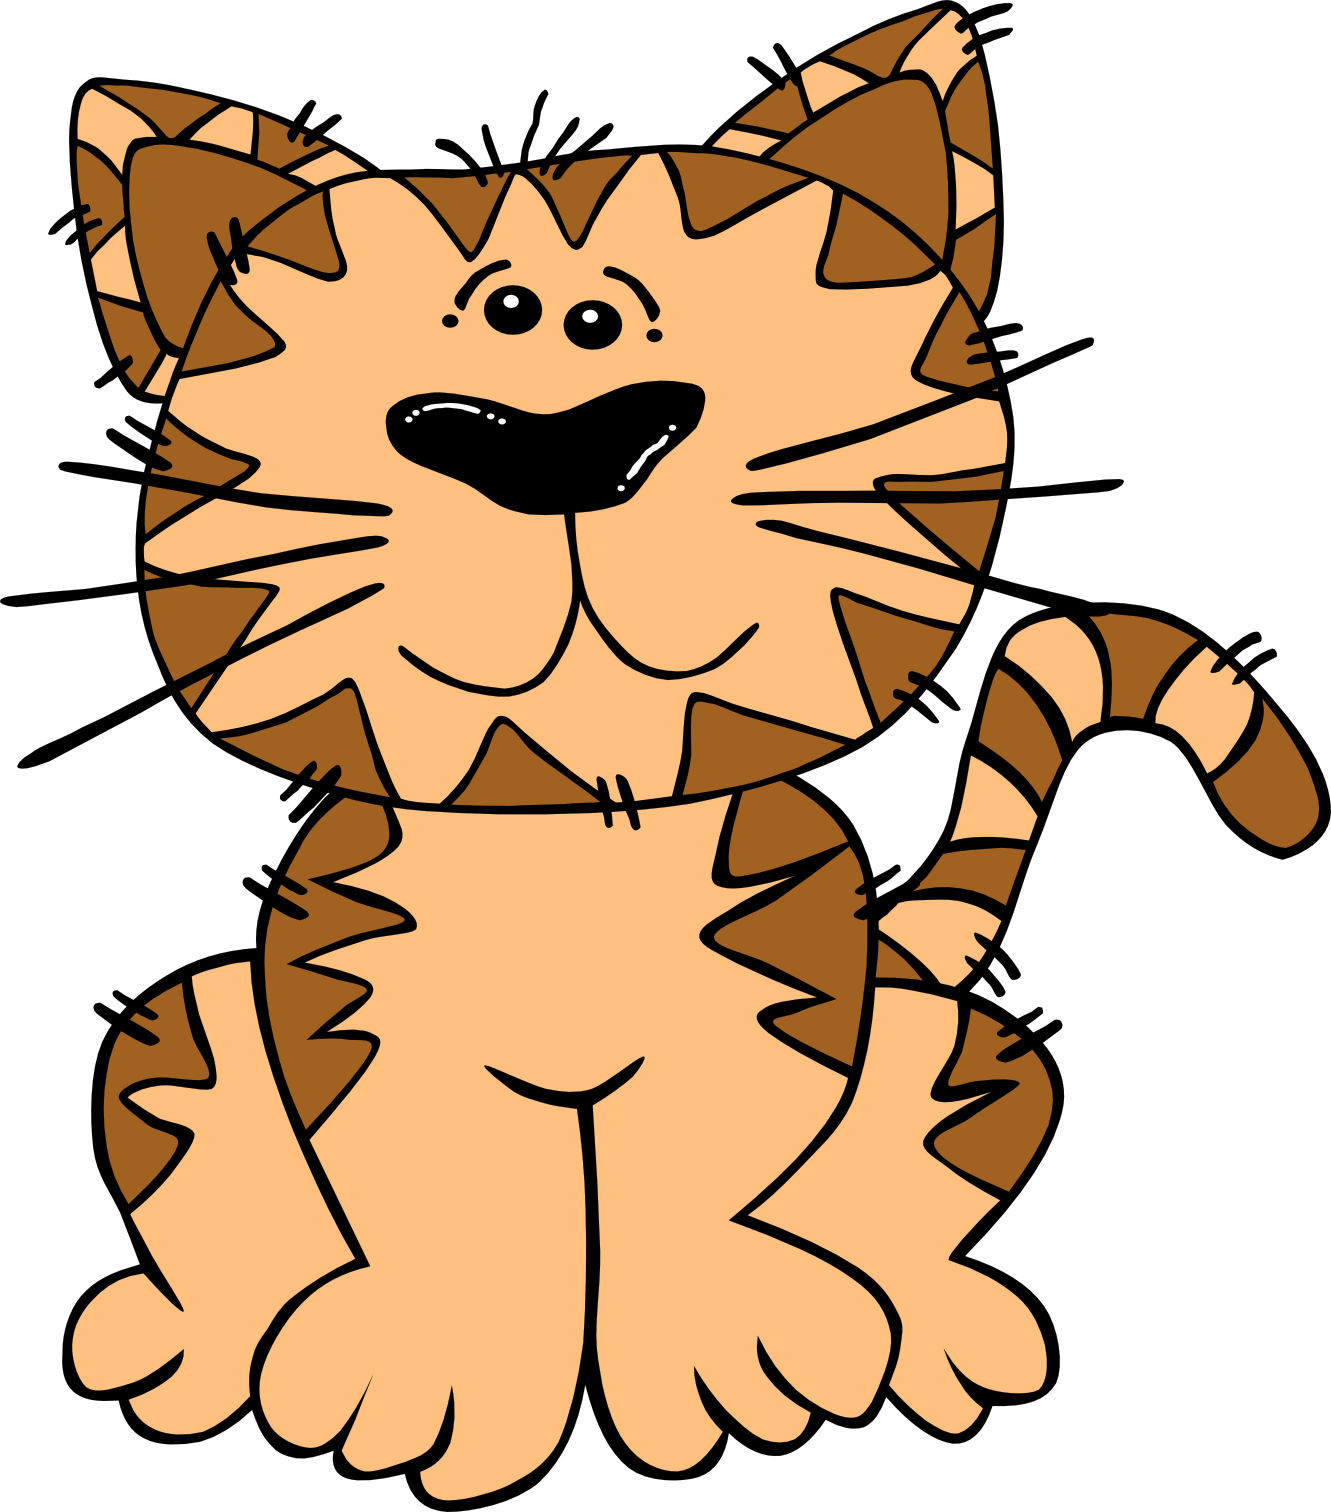 gerald g cartoon cat sitting SVG - ClipArt Best - ClipArt Best